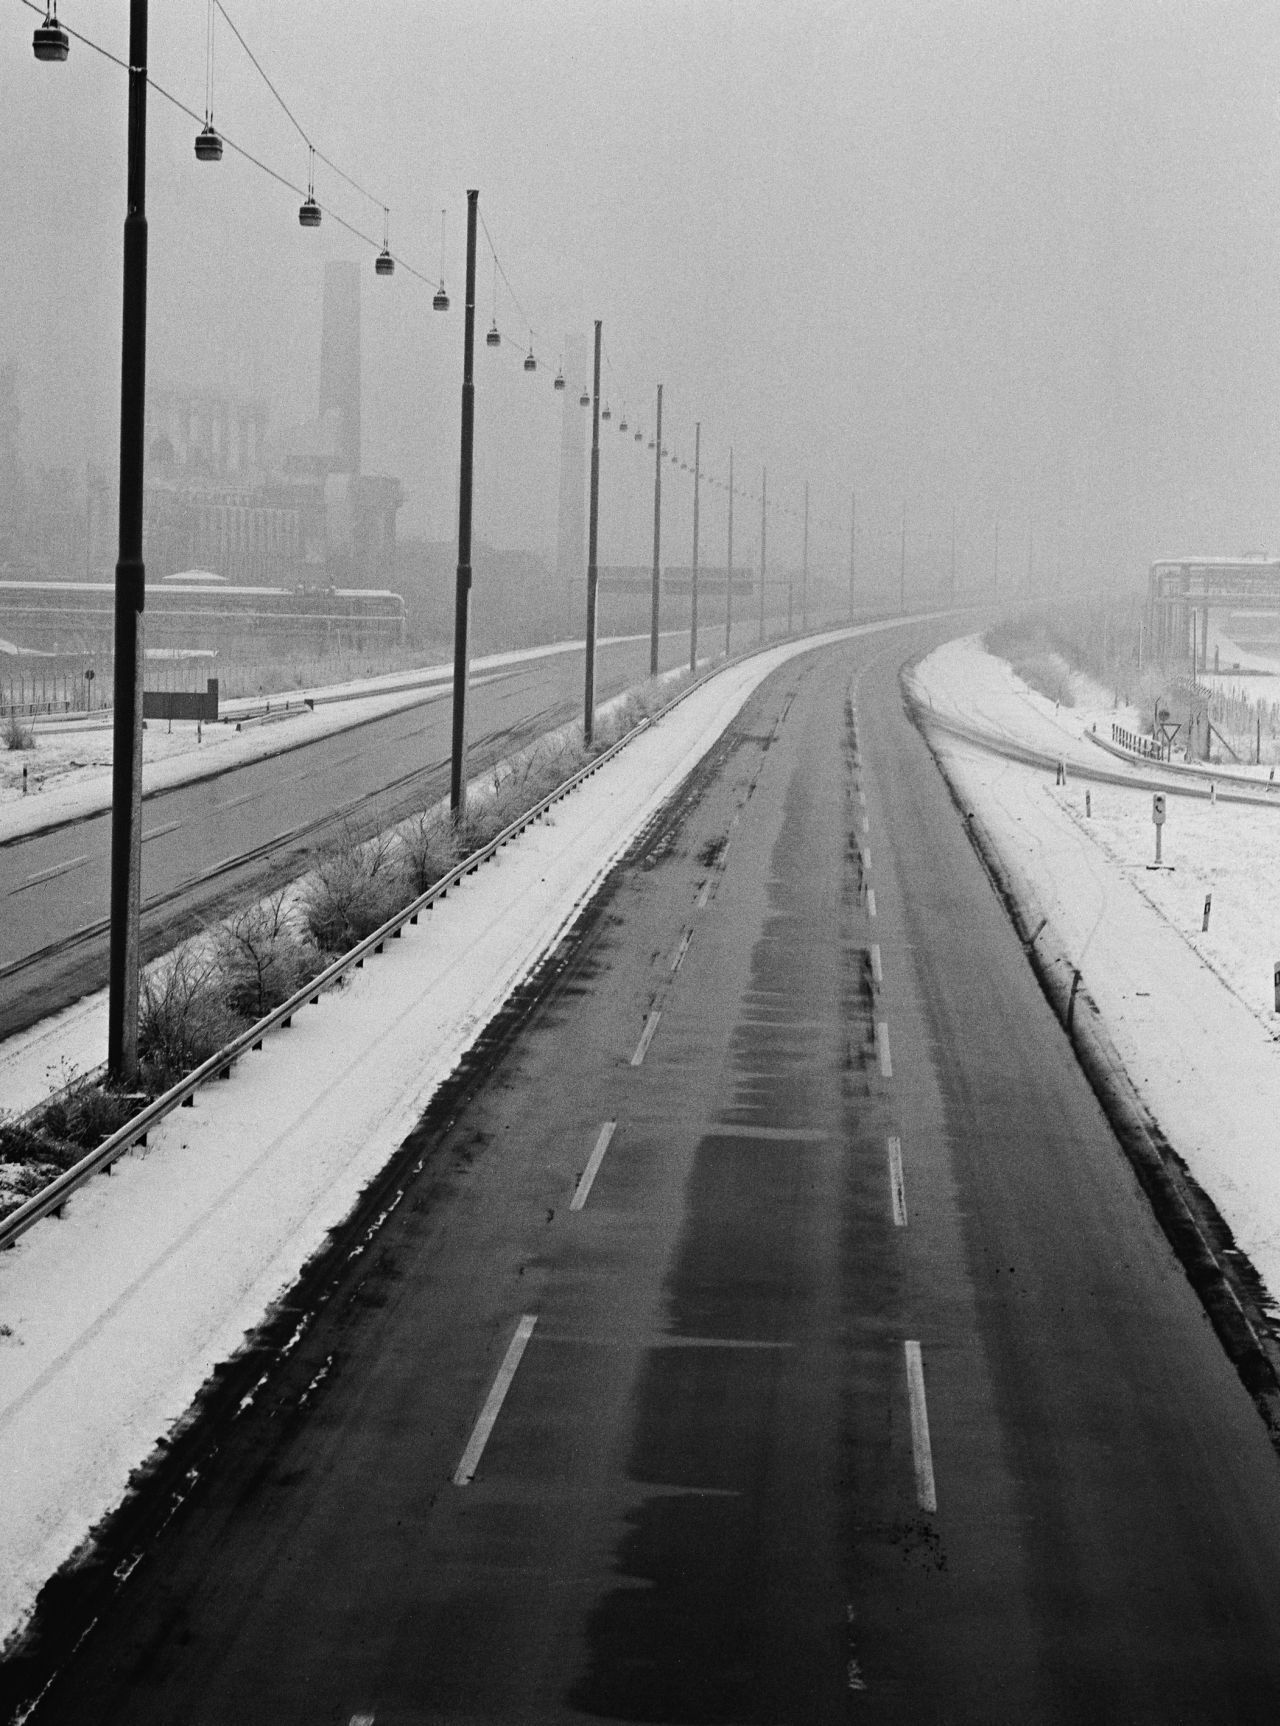 Schwarzweiß-Foto einer autofreien Autobahn. Je Fahrtrichtung drei Spuren. Auffahrt von rechts. Mittel- und Randstreifen sind schneebedeckt. Auf dem Mittelstreifen Straßenlaternen. Hintergrund nebelverhangen. Links neben der Autobahn Industrieanlagen.